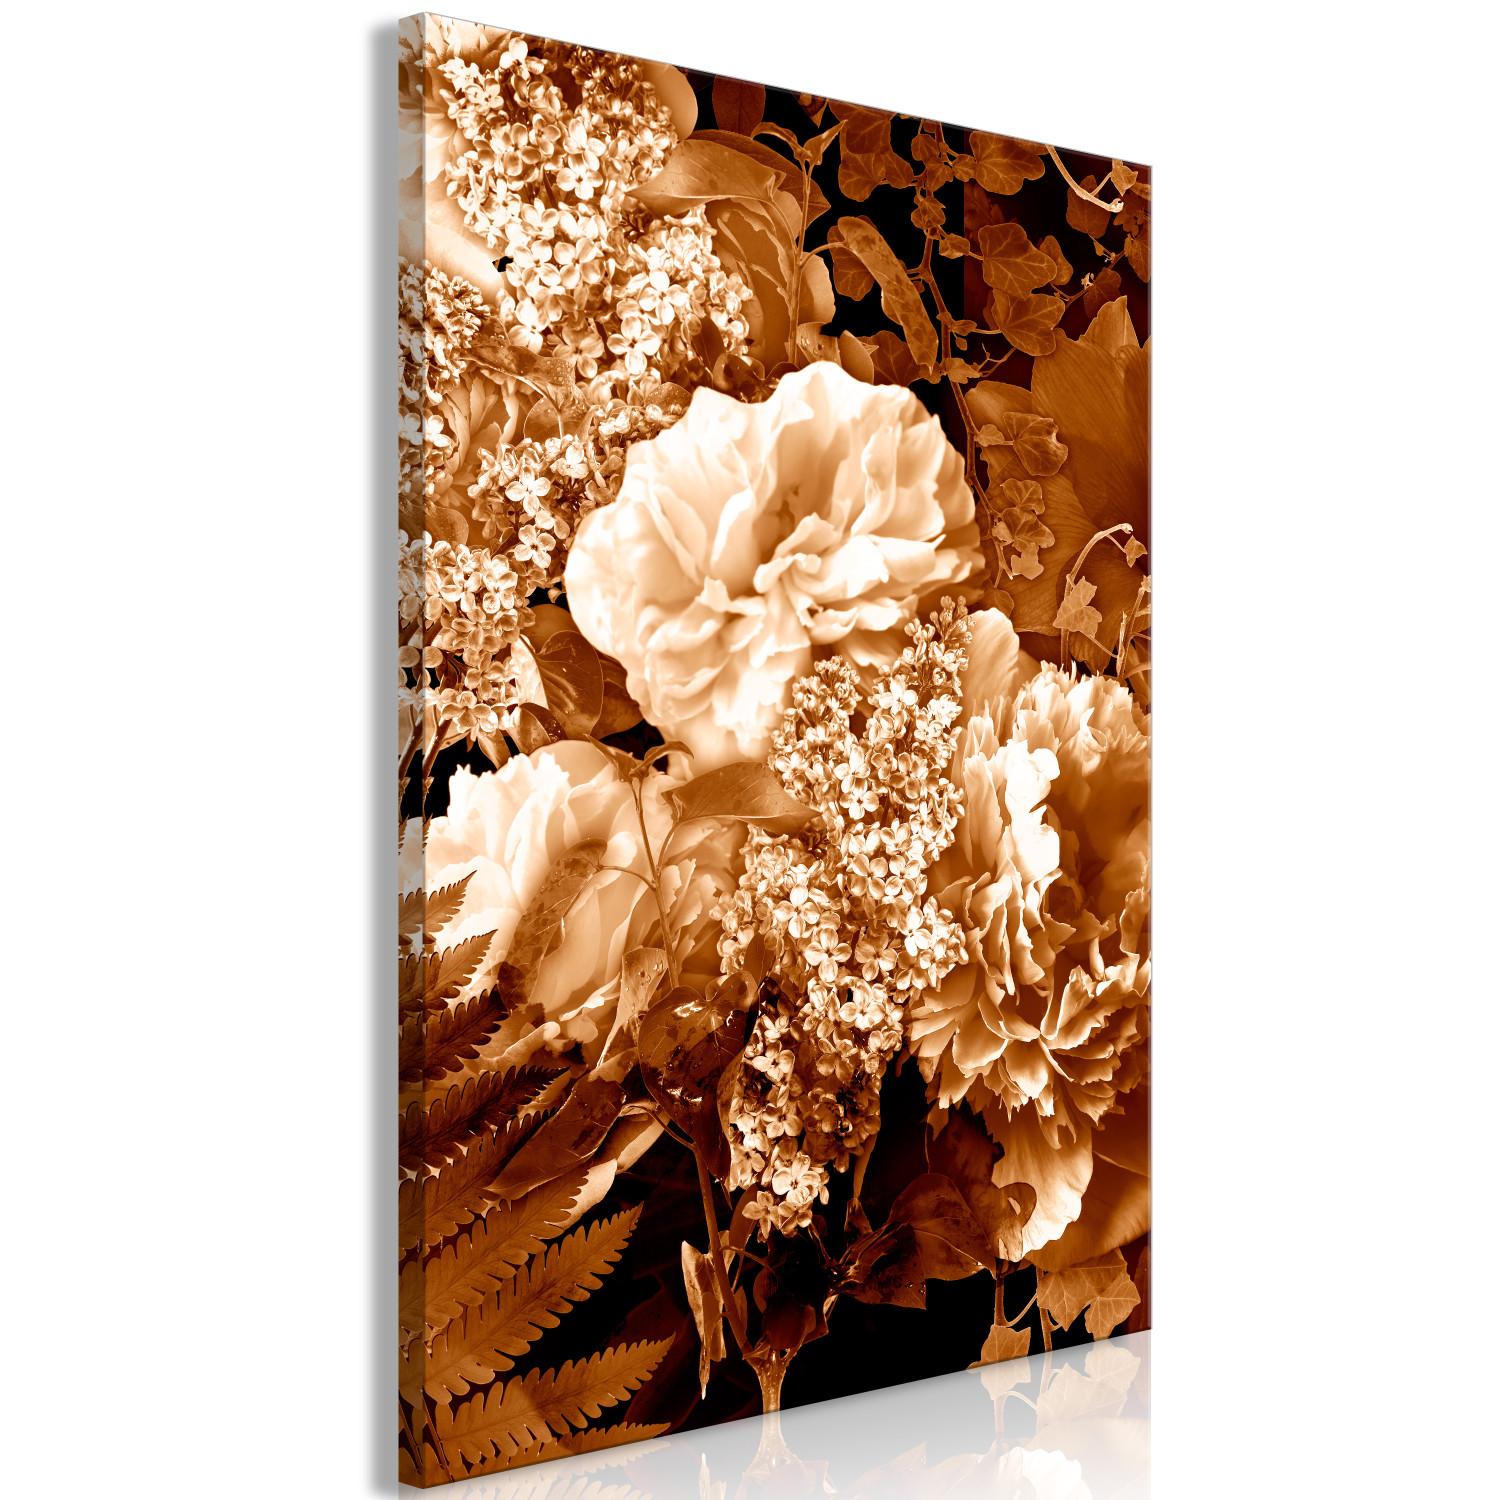 Cuadro moderno Ramo de flores de otoño - una foto de flores en color sepia